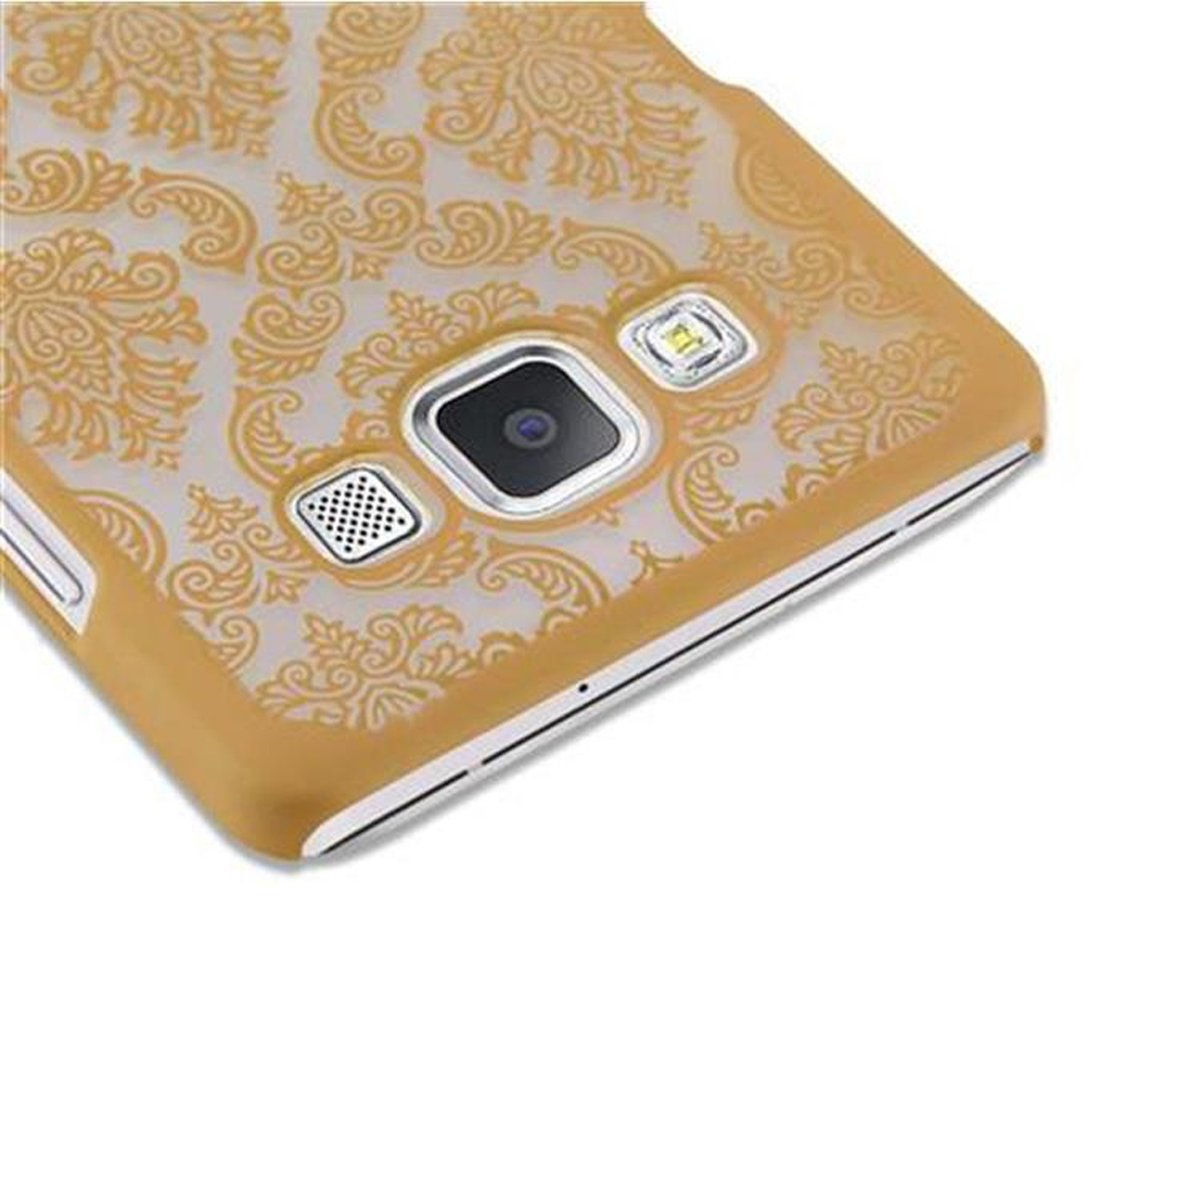 CADORABO Hülle Hard Case 2015, Henna Design, Galaxy Blumen in A5 Backcover, GOLD Samsung, Paisley